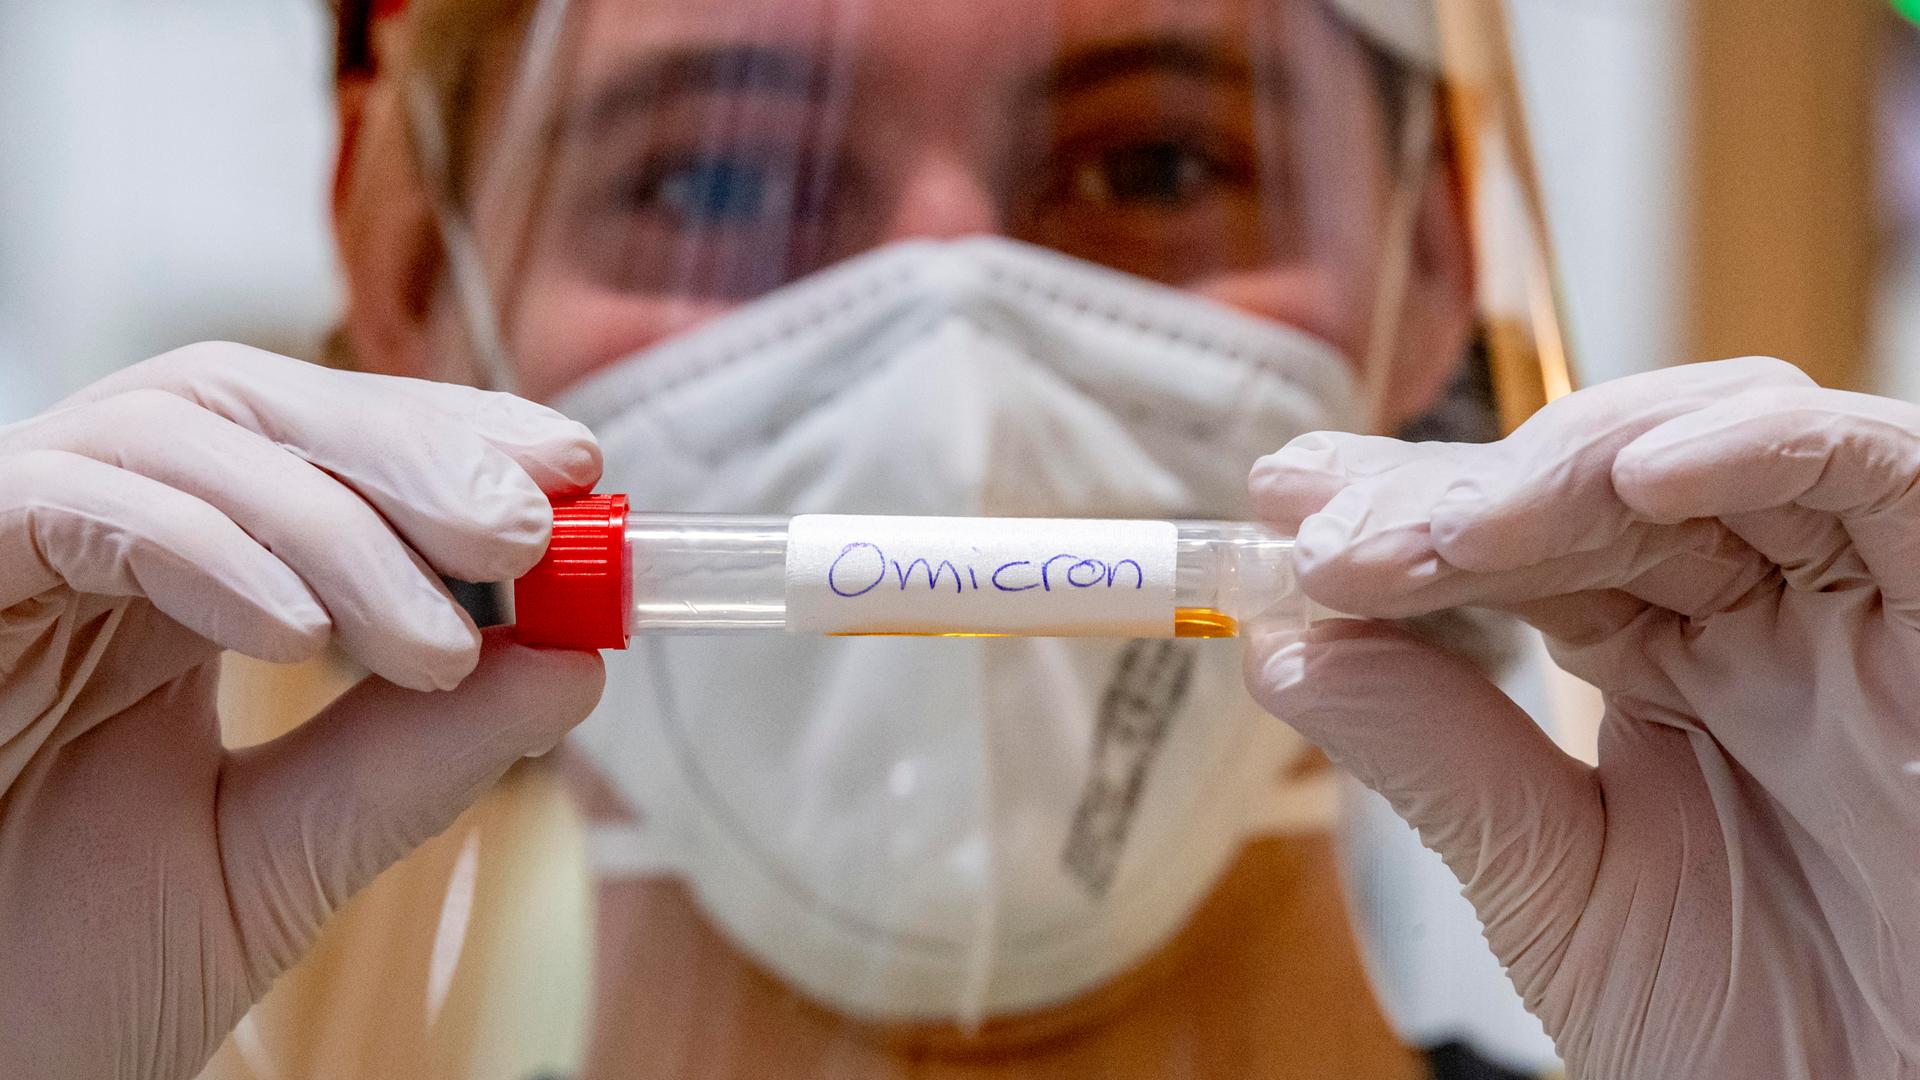 Ein Labormitarbeiter hält vor sich ein Teströhrchen mit der Aufschrift "Omicron". Er trägt Handschuhe und eine Maske vor Mund und Nase.